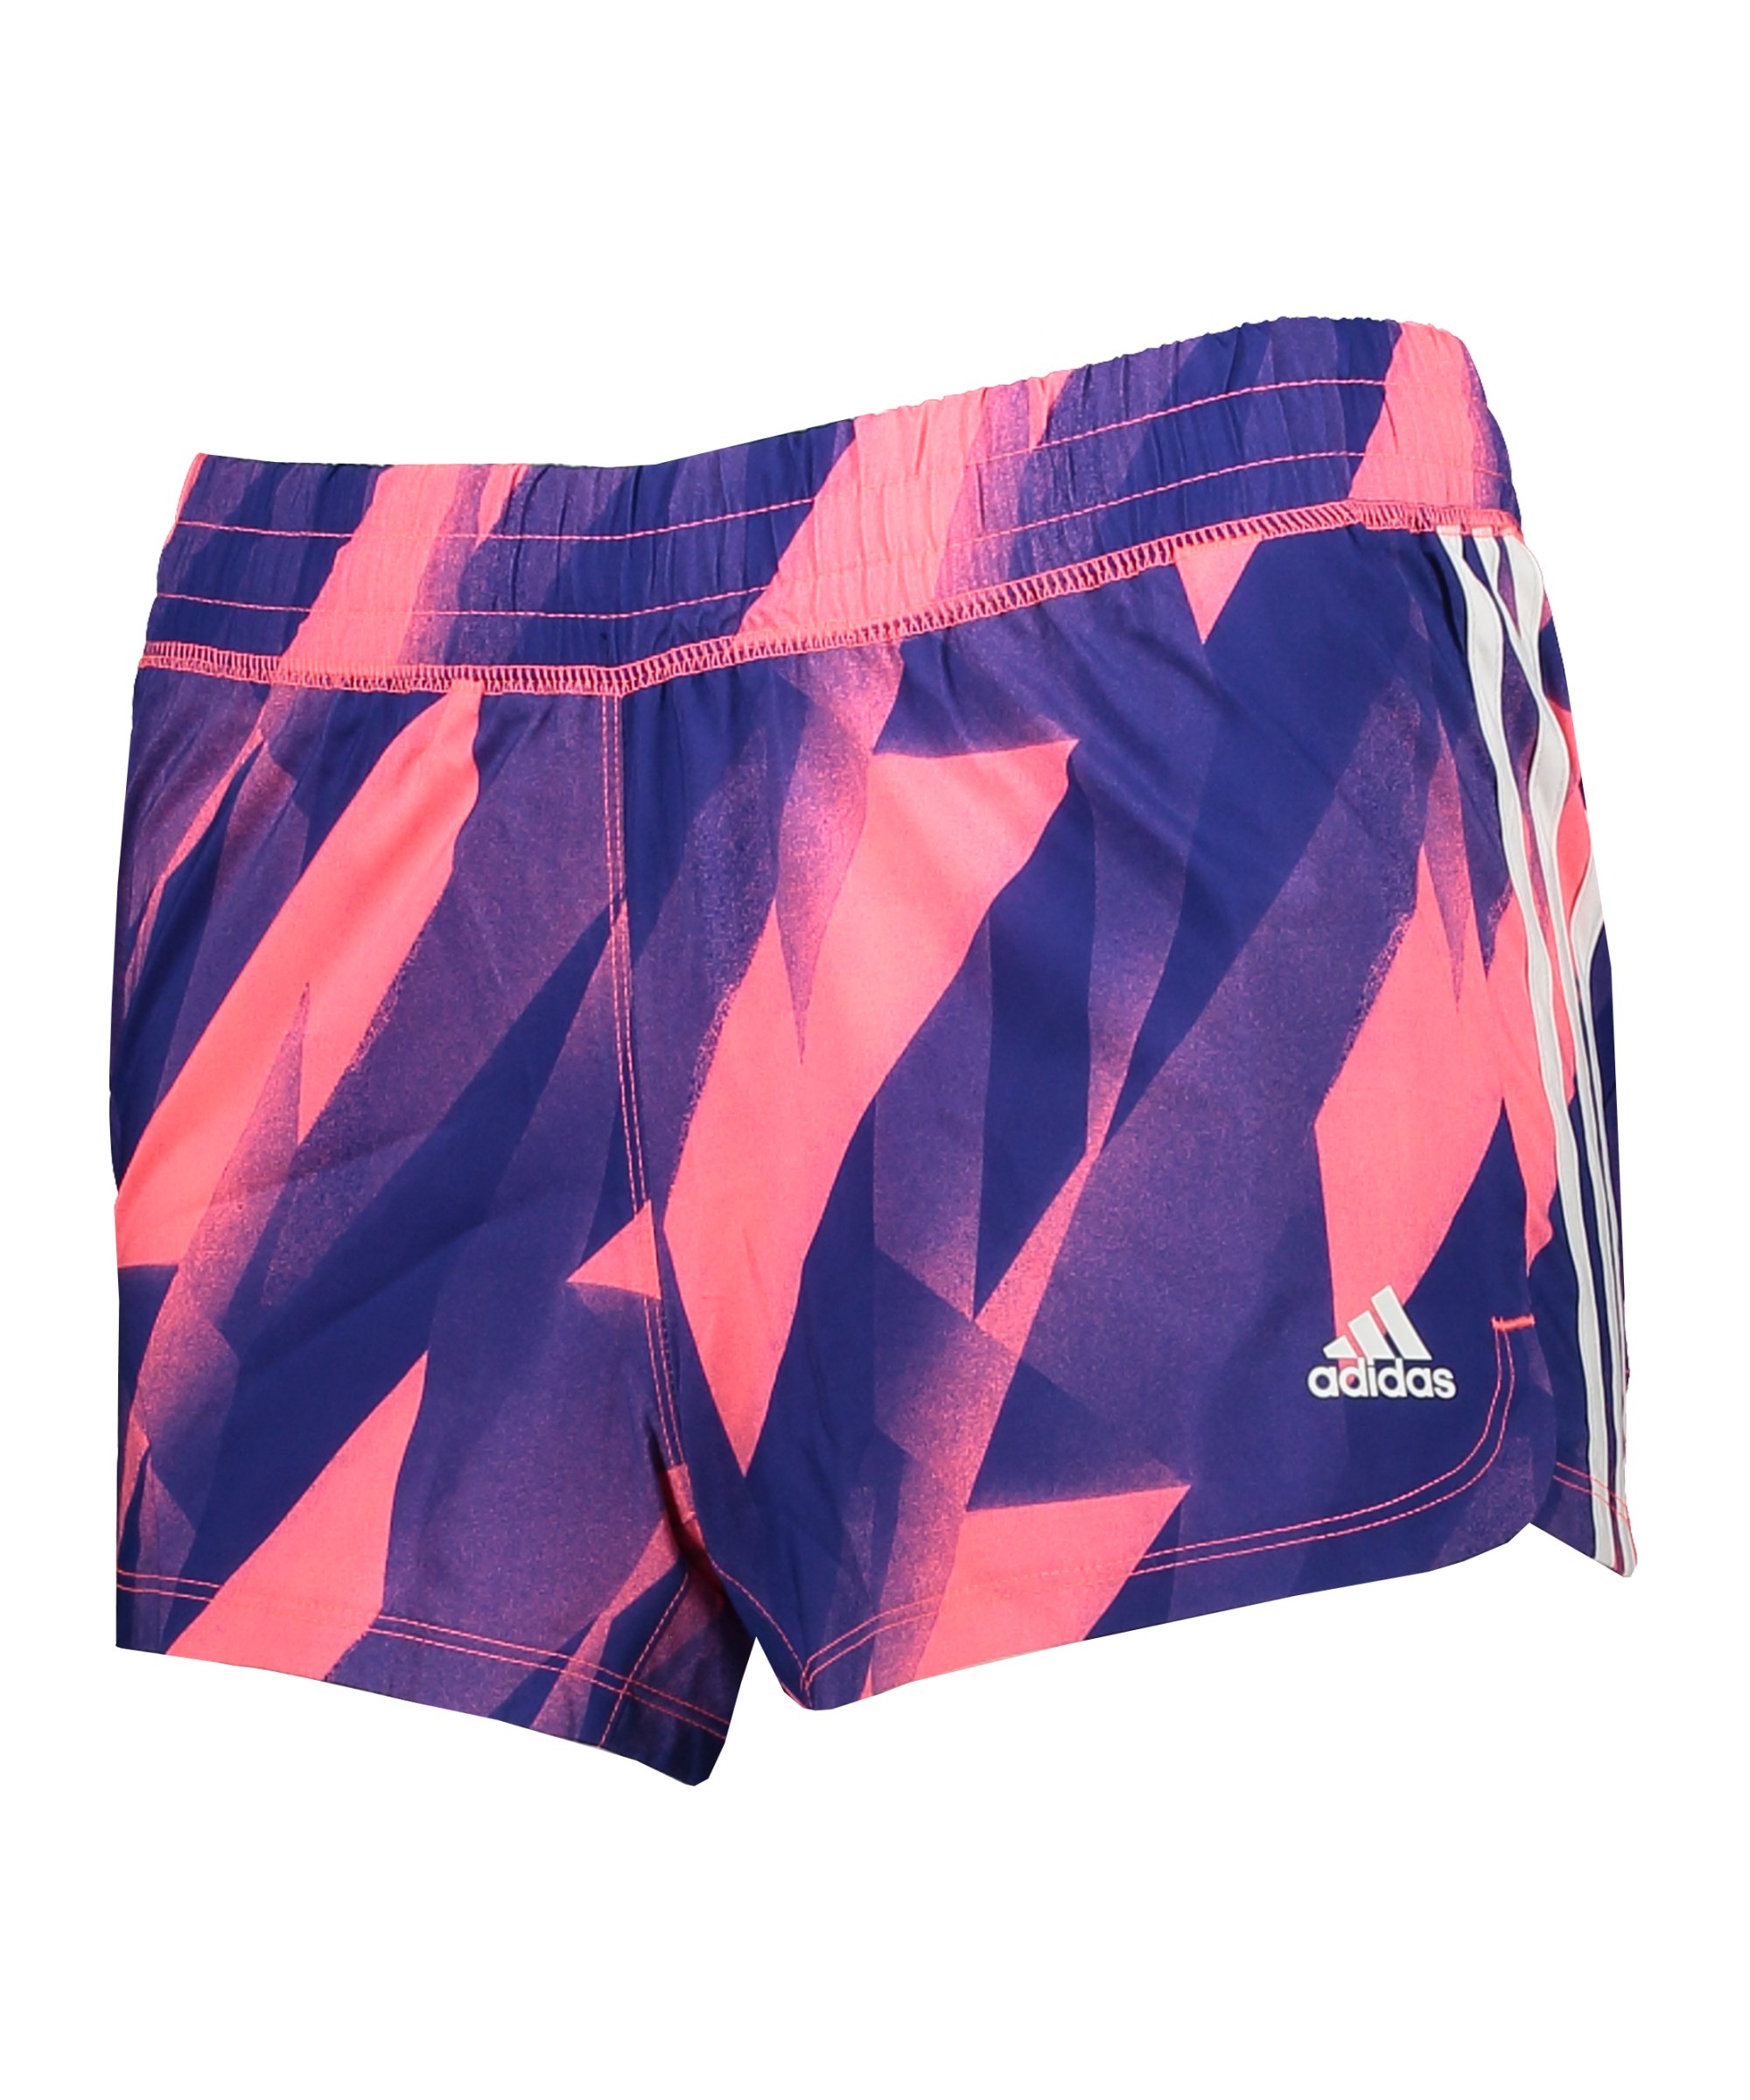 adidas 3 Stripes Pacer H2C Short Damen Pink - pink